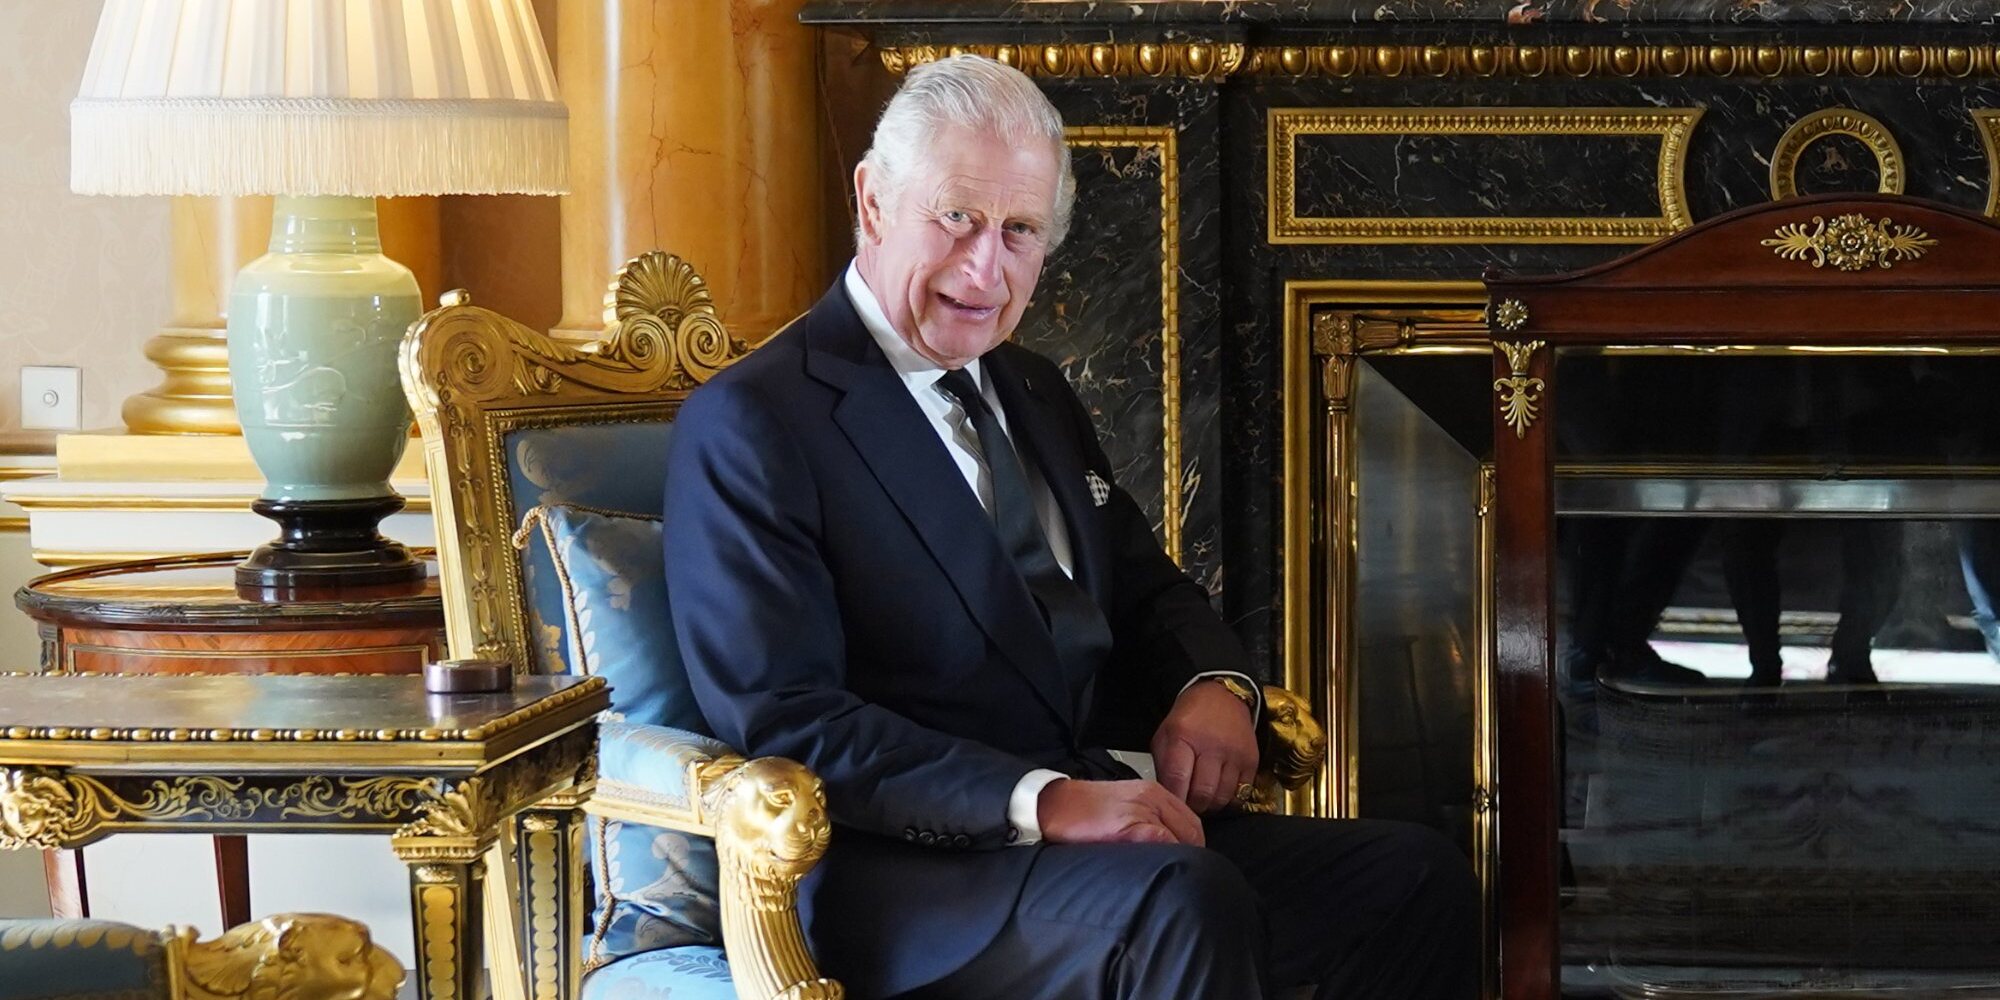 La presentación mundial del Rey Carlos III: recibe a 500 líderes internacionales en el Palacio de Buckingham